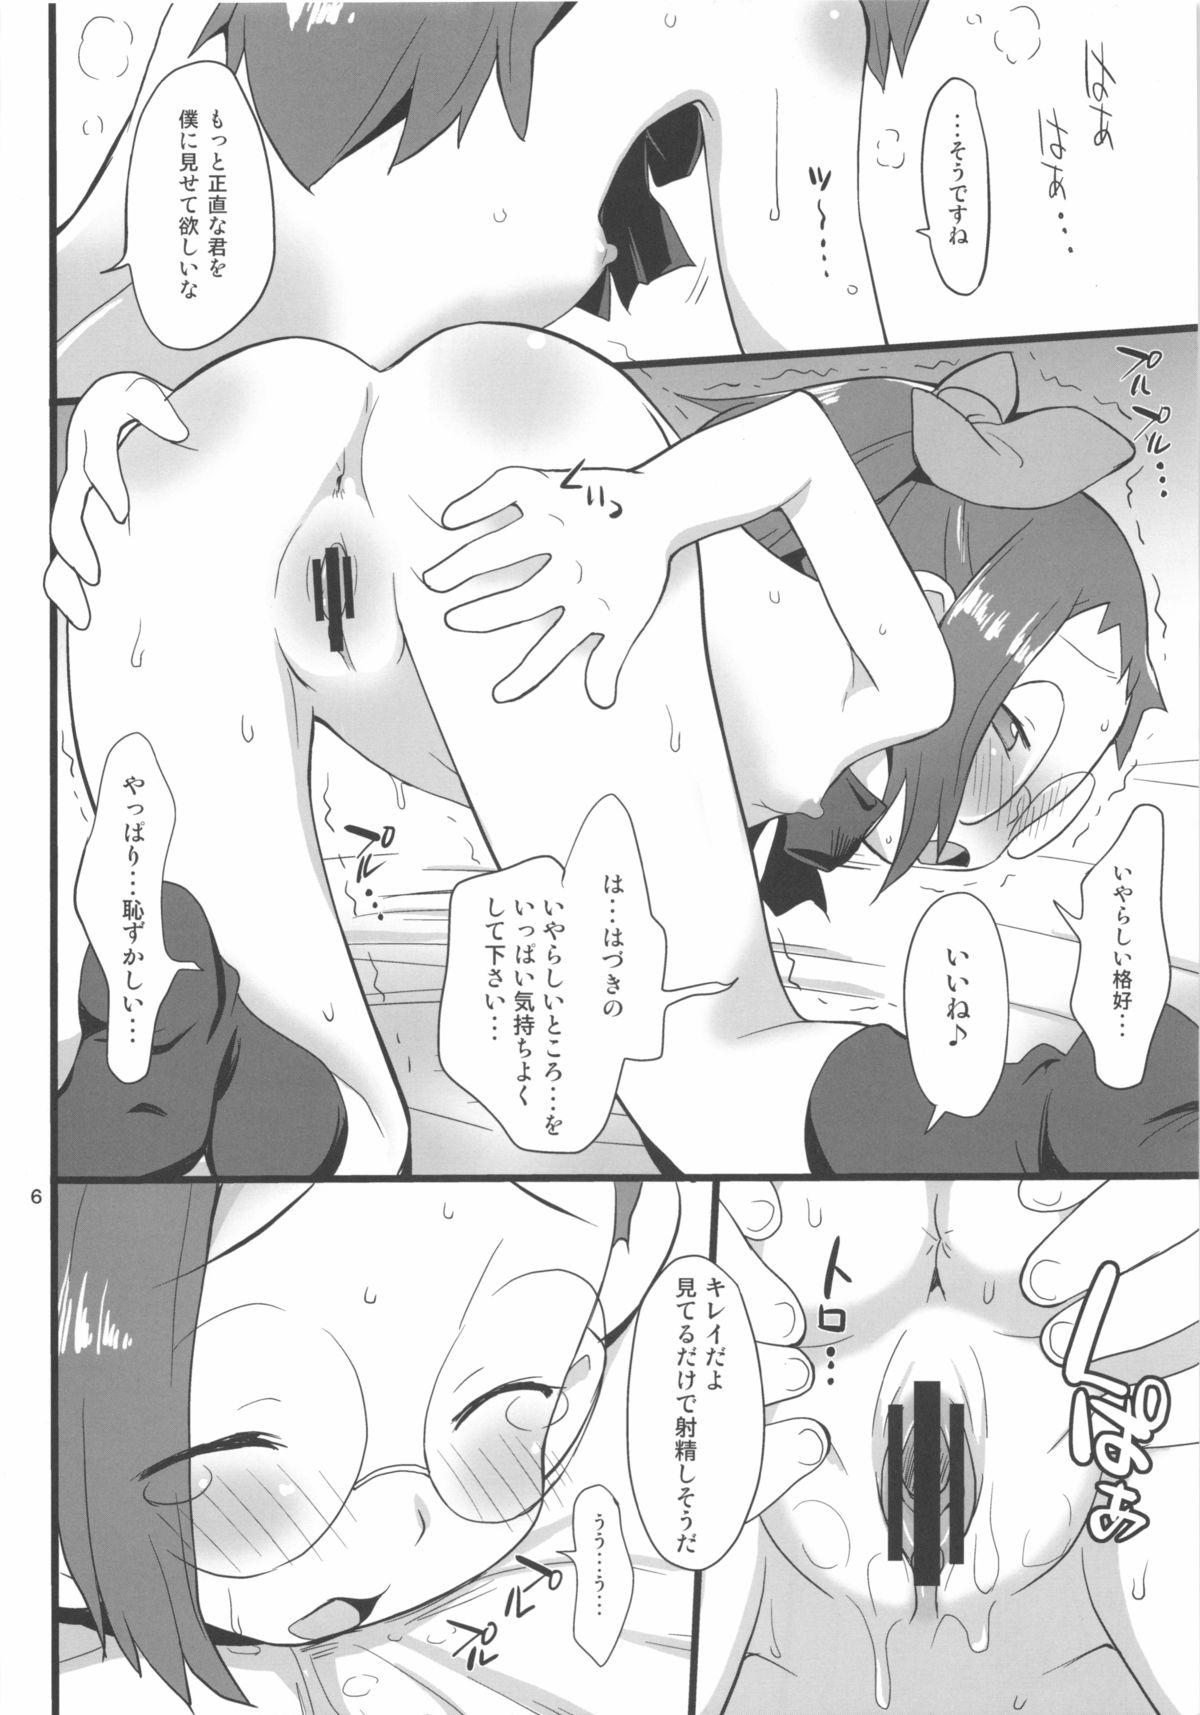 Milfs Watashi no Jikan Yuugure - Ojamajo doremi Boyfriend - Page 6